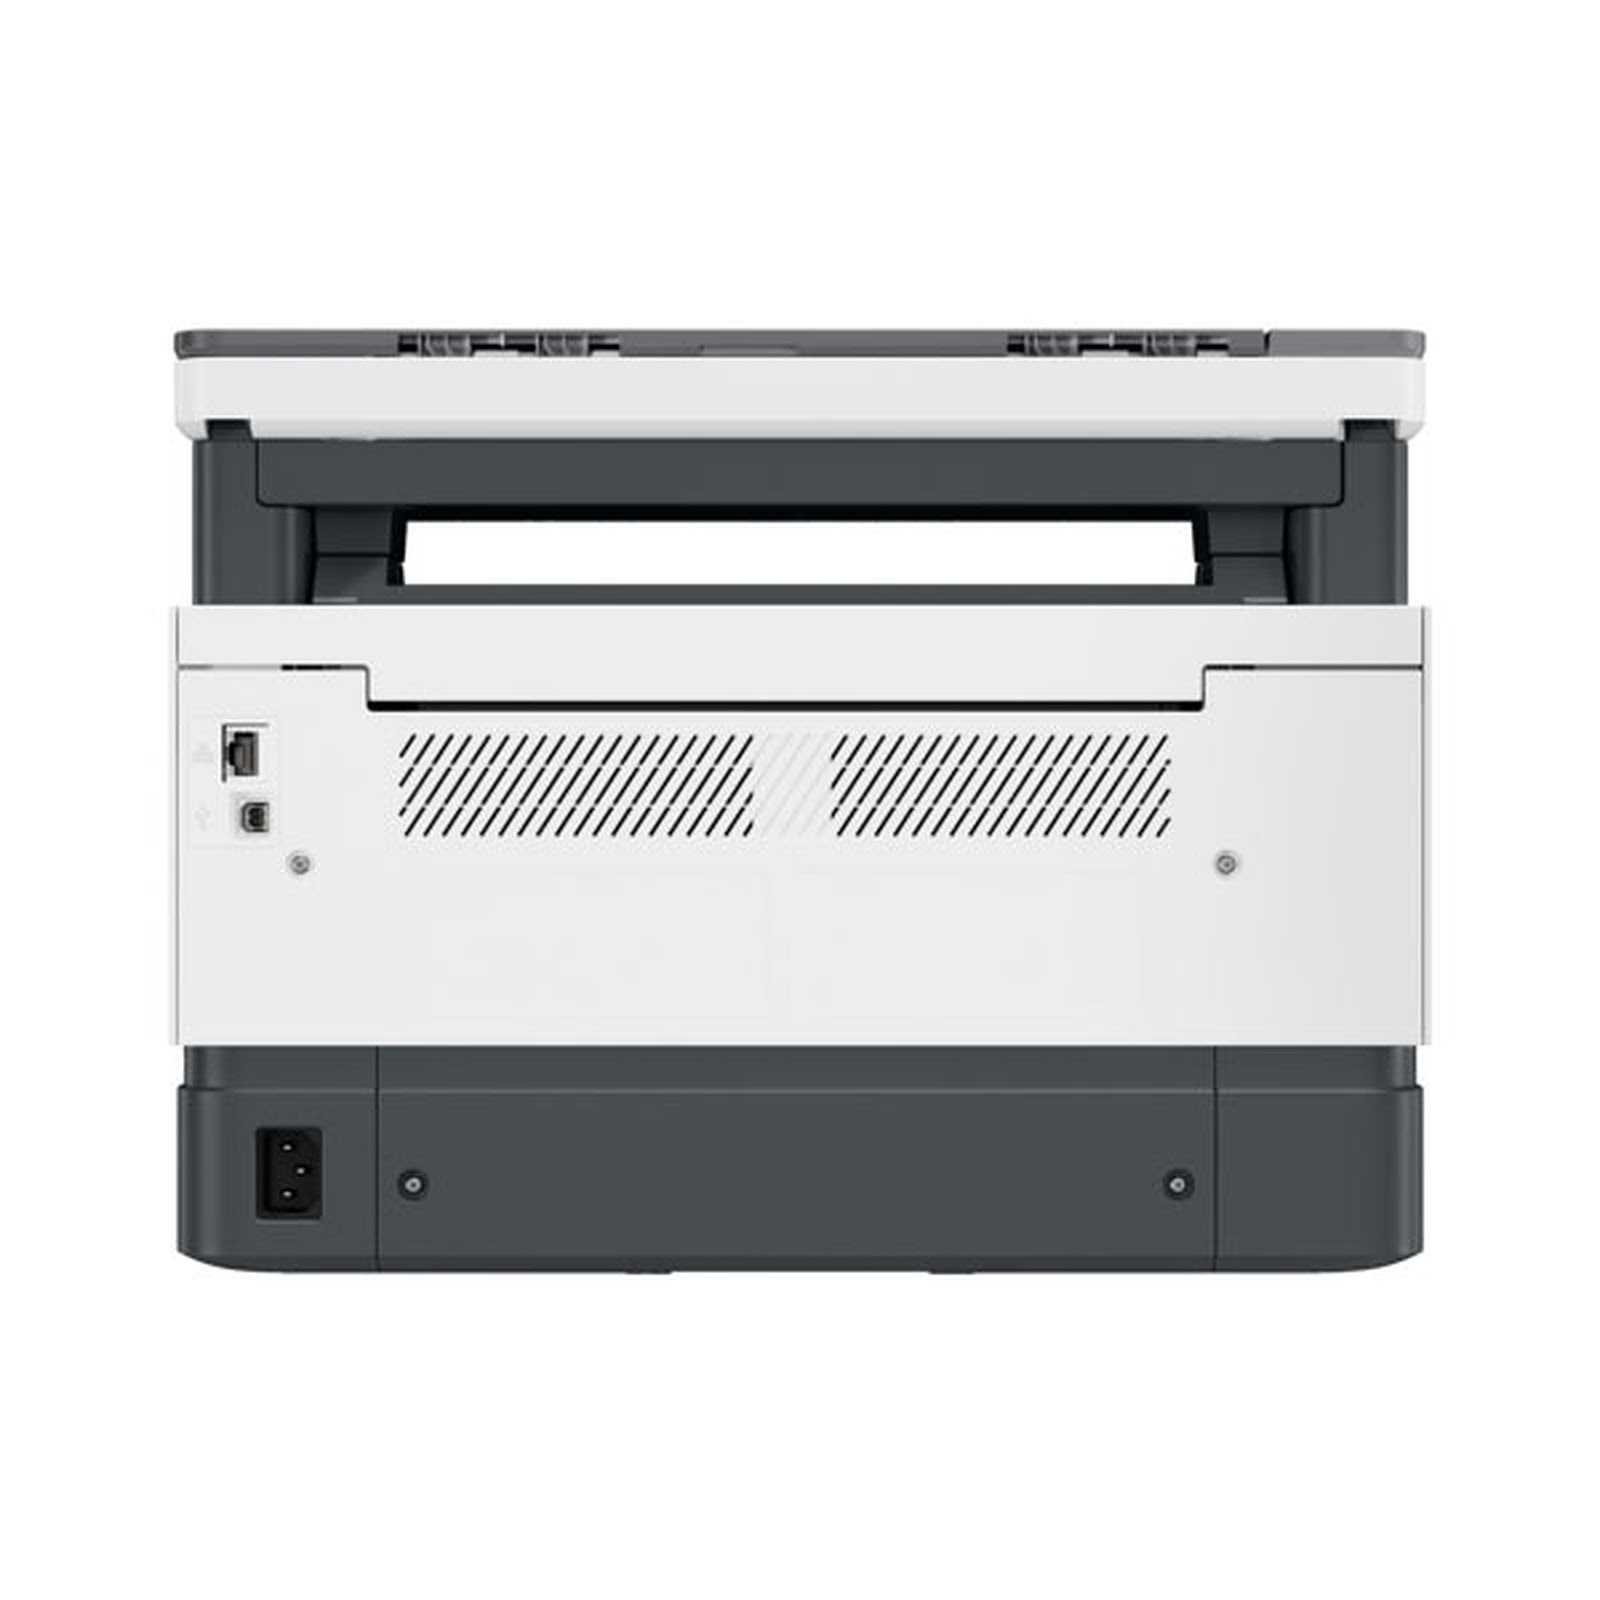 Imprimante multifonction HP Neverstop 1201n - Cybertek.fr - 2